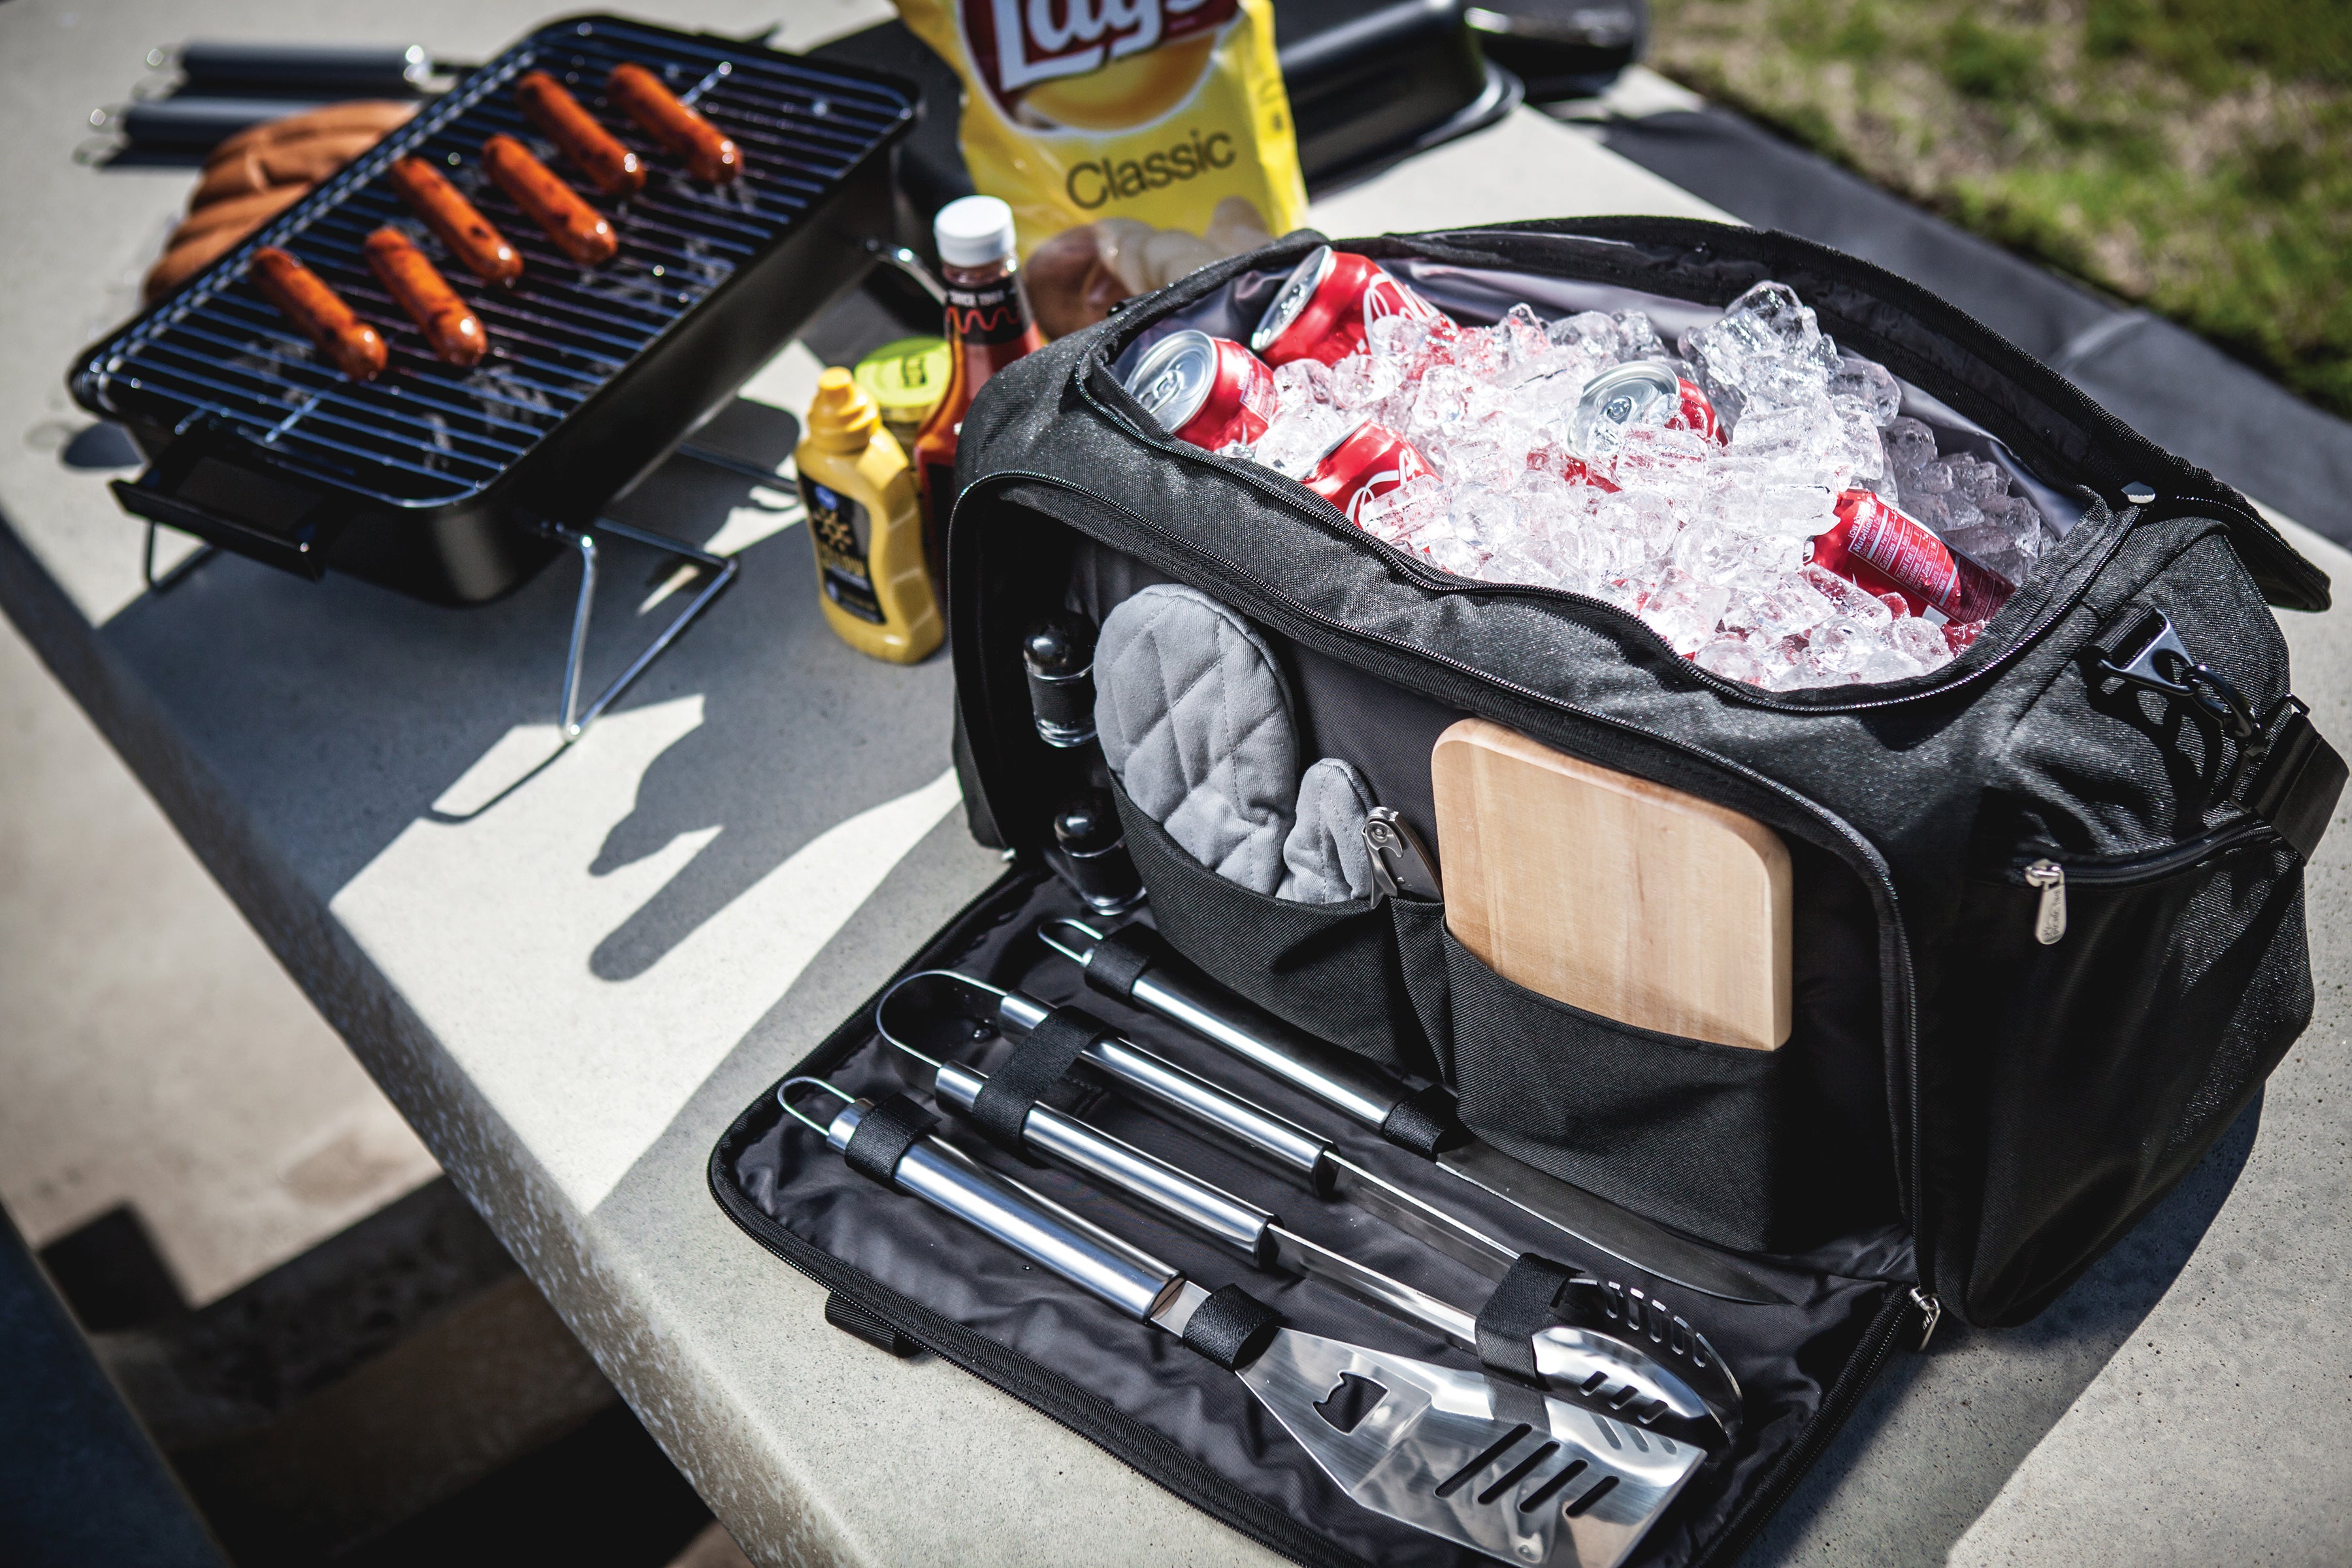 Denver Broncos - BBQ Kit Grill Set & Cooler